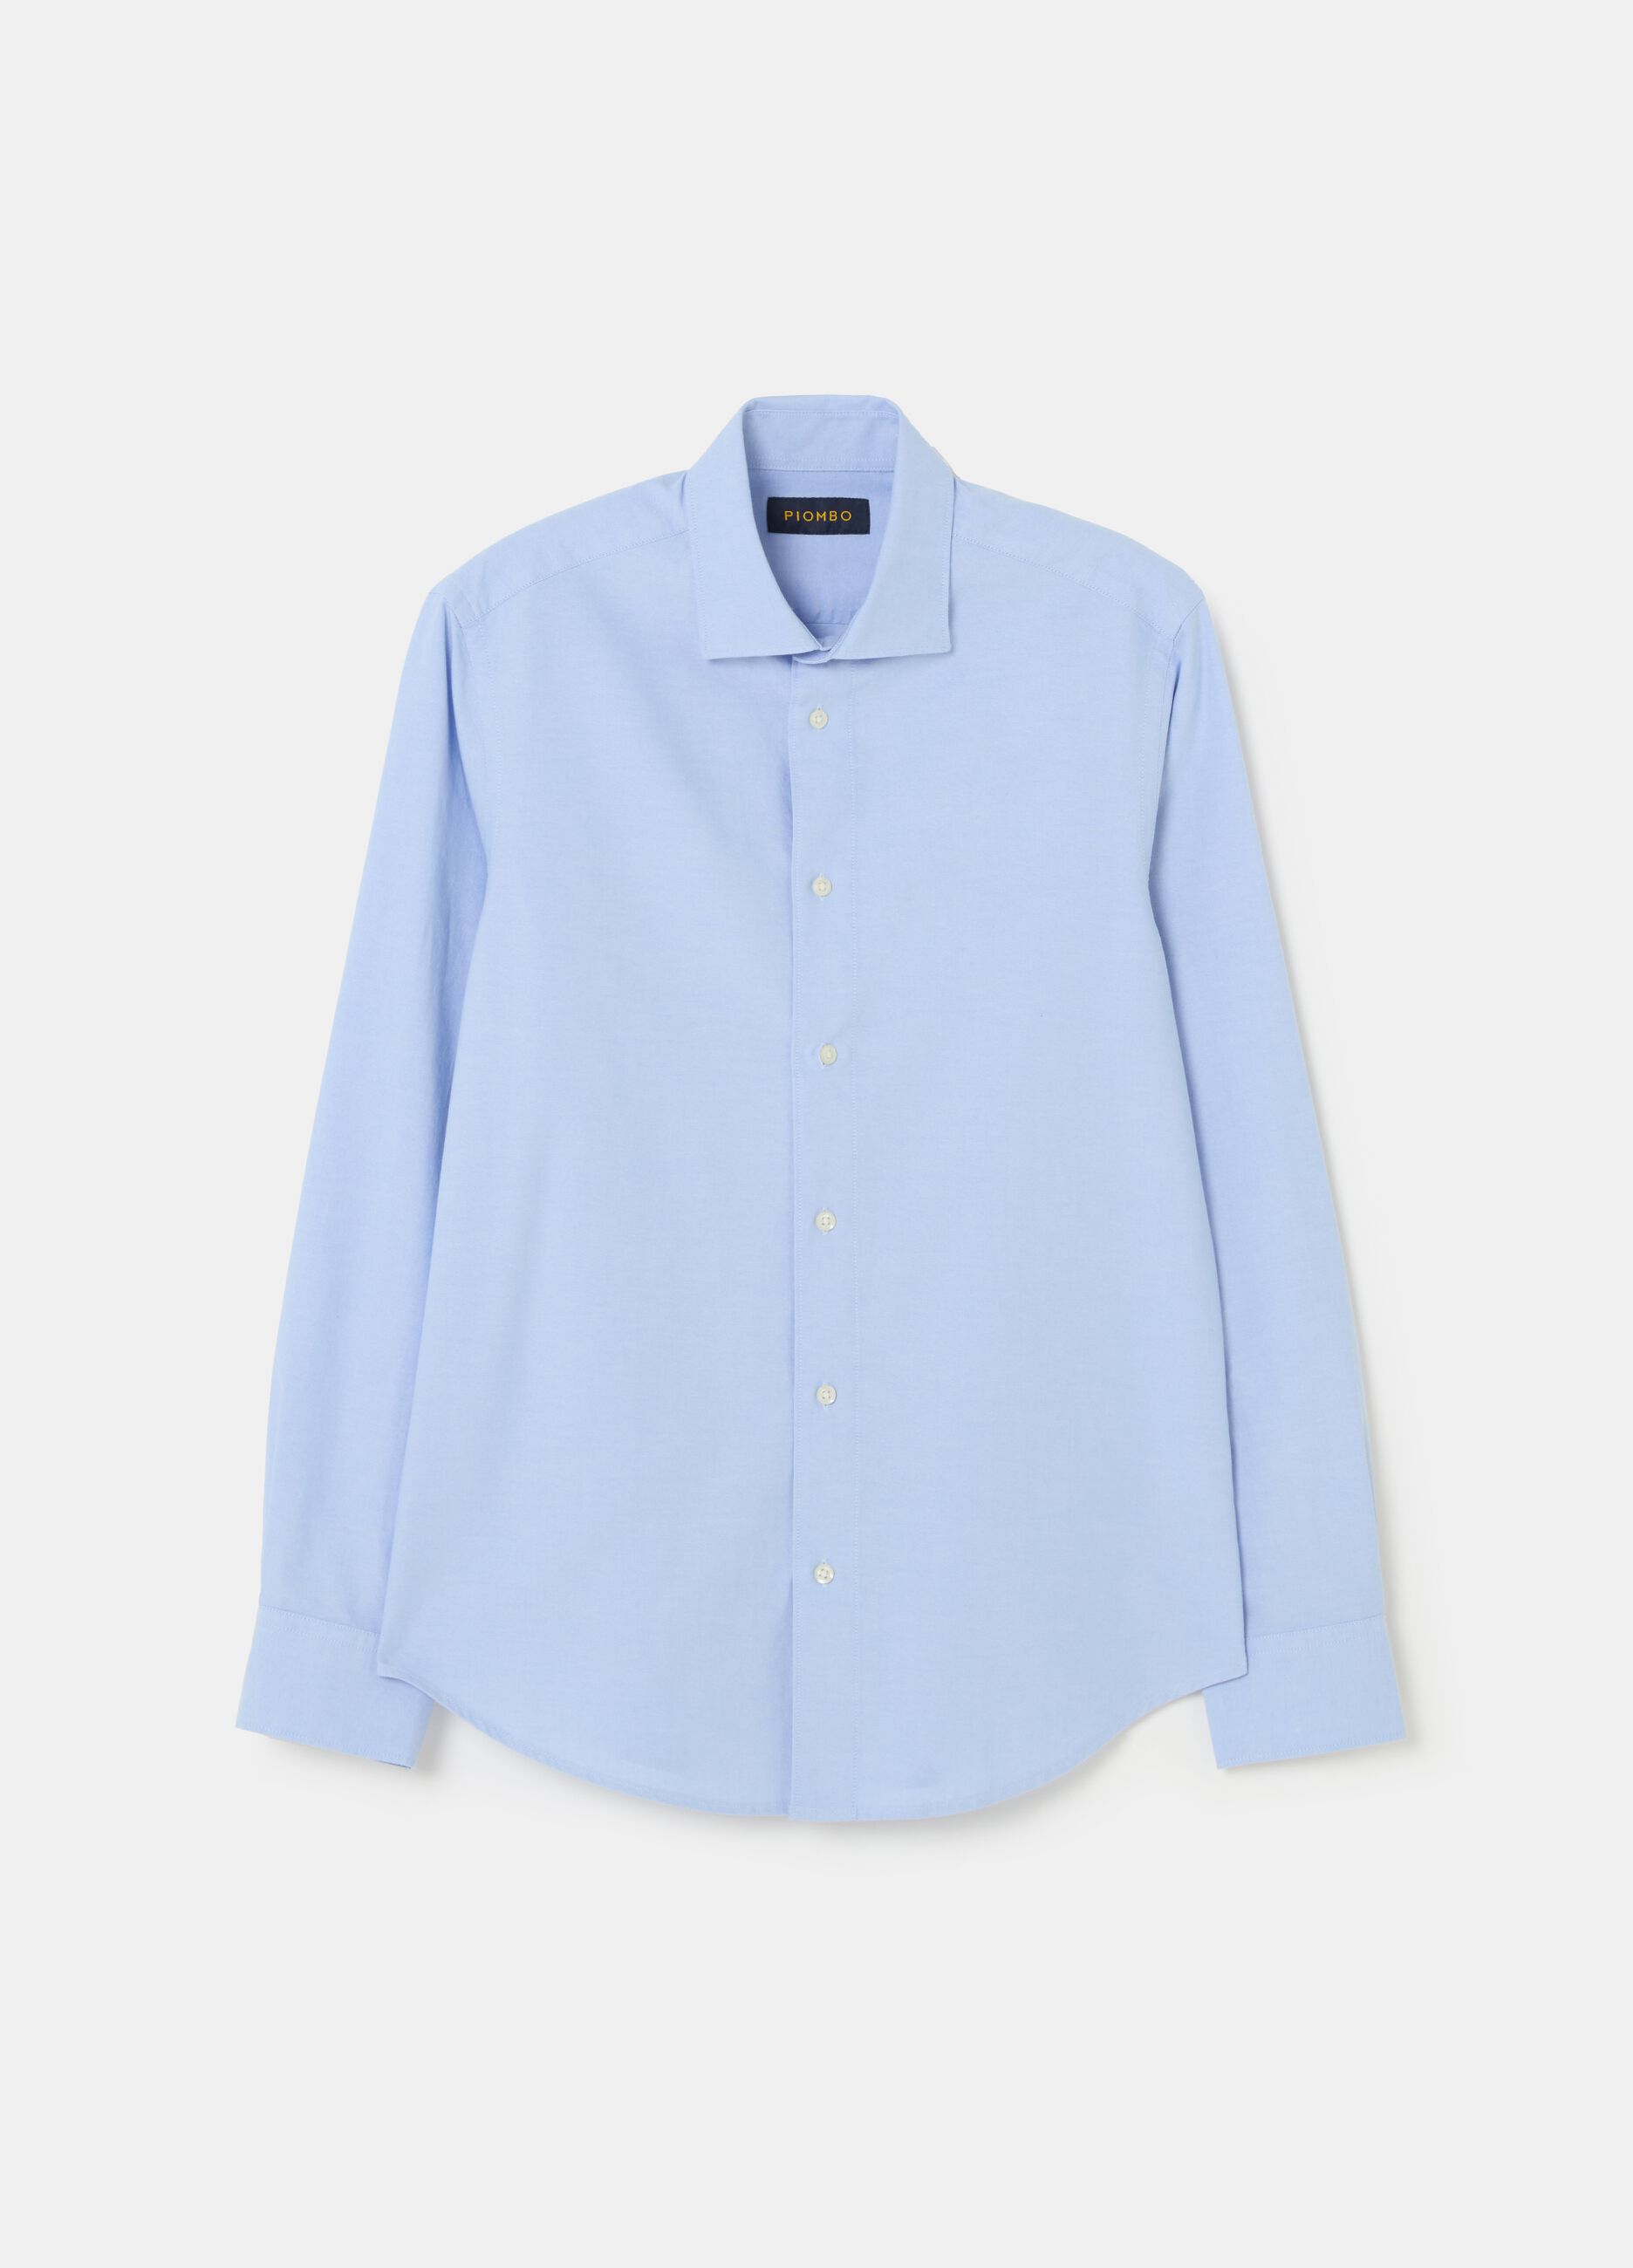 Oxford cotton shirt